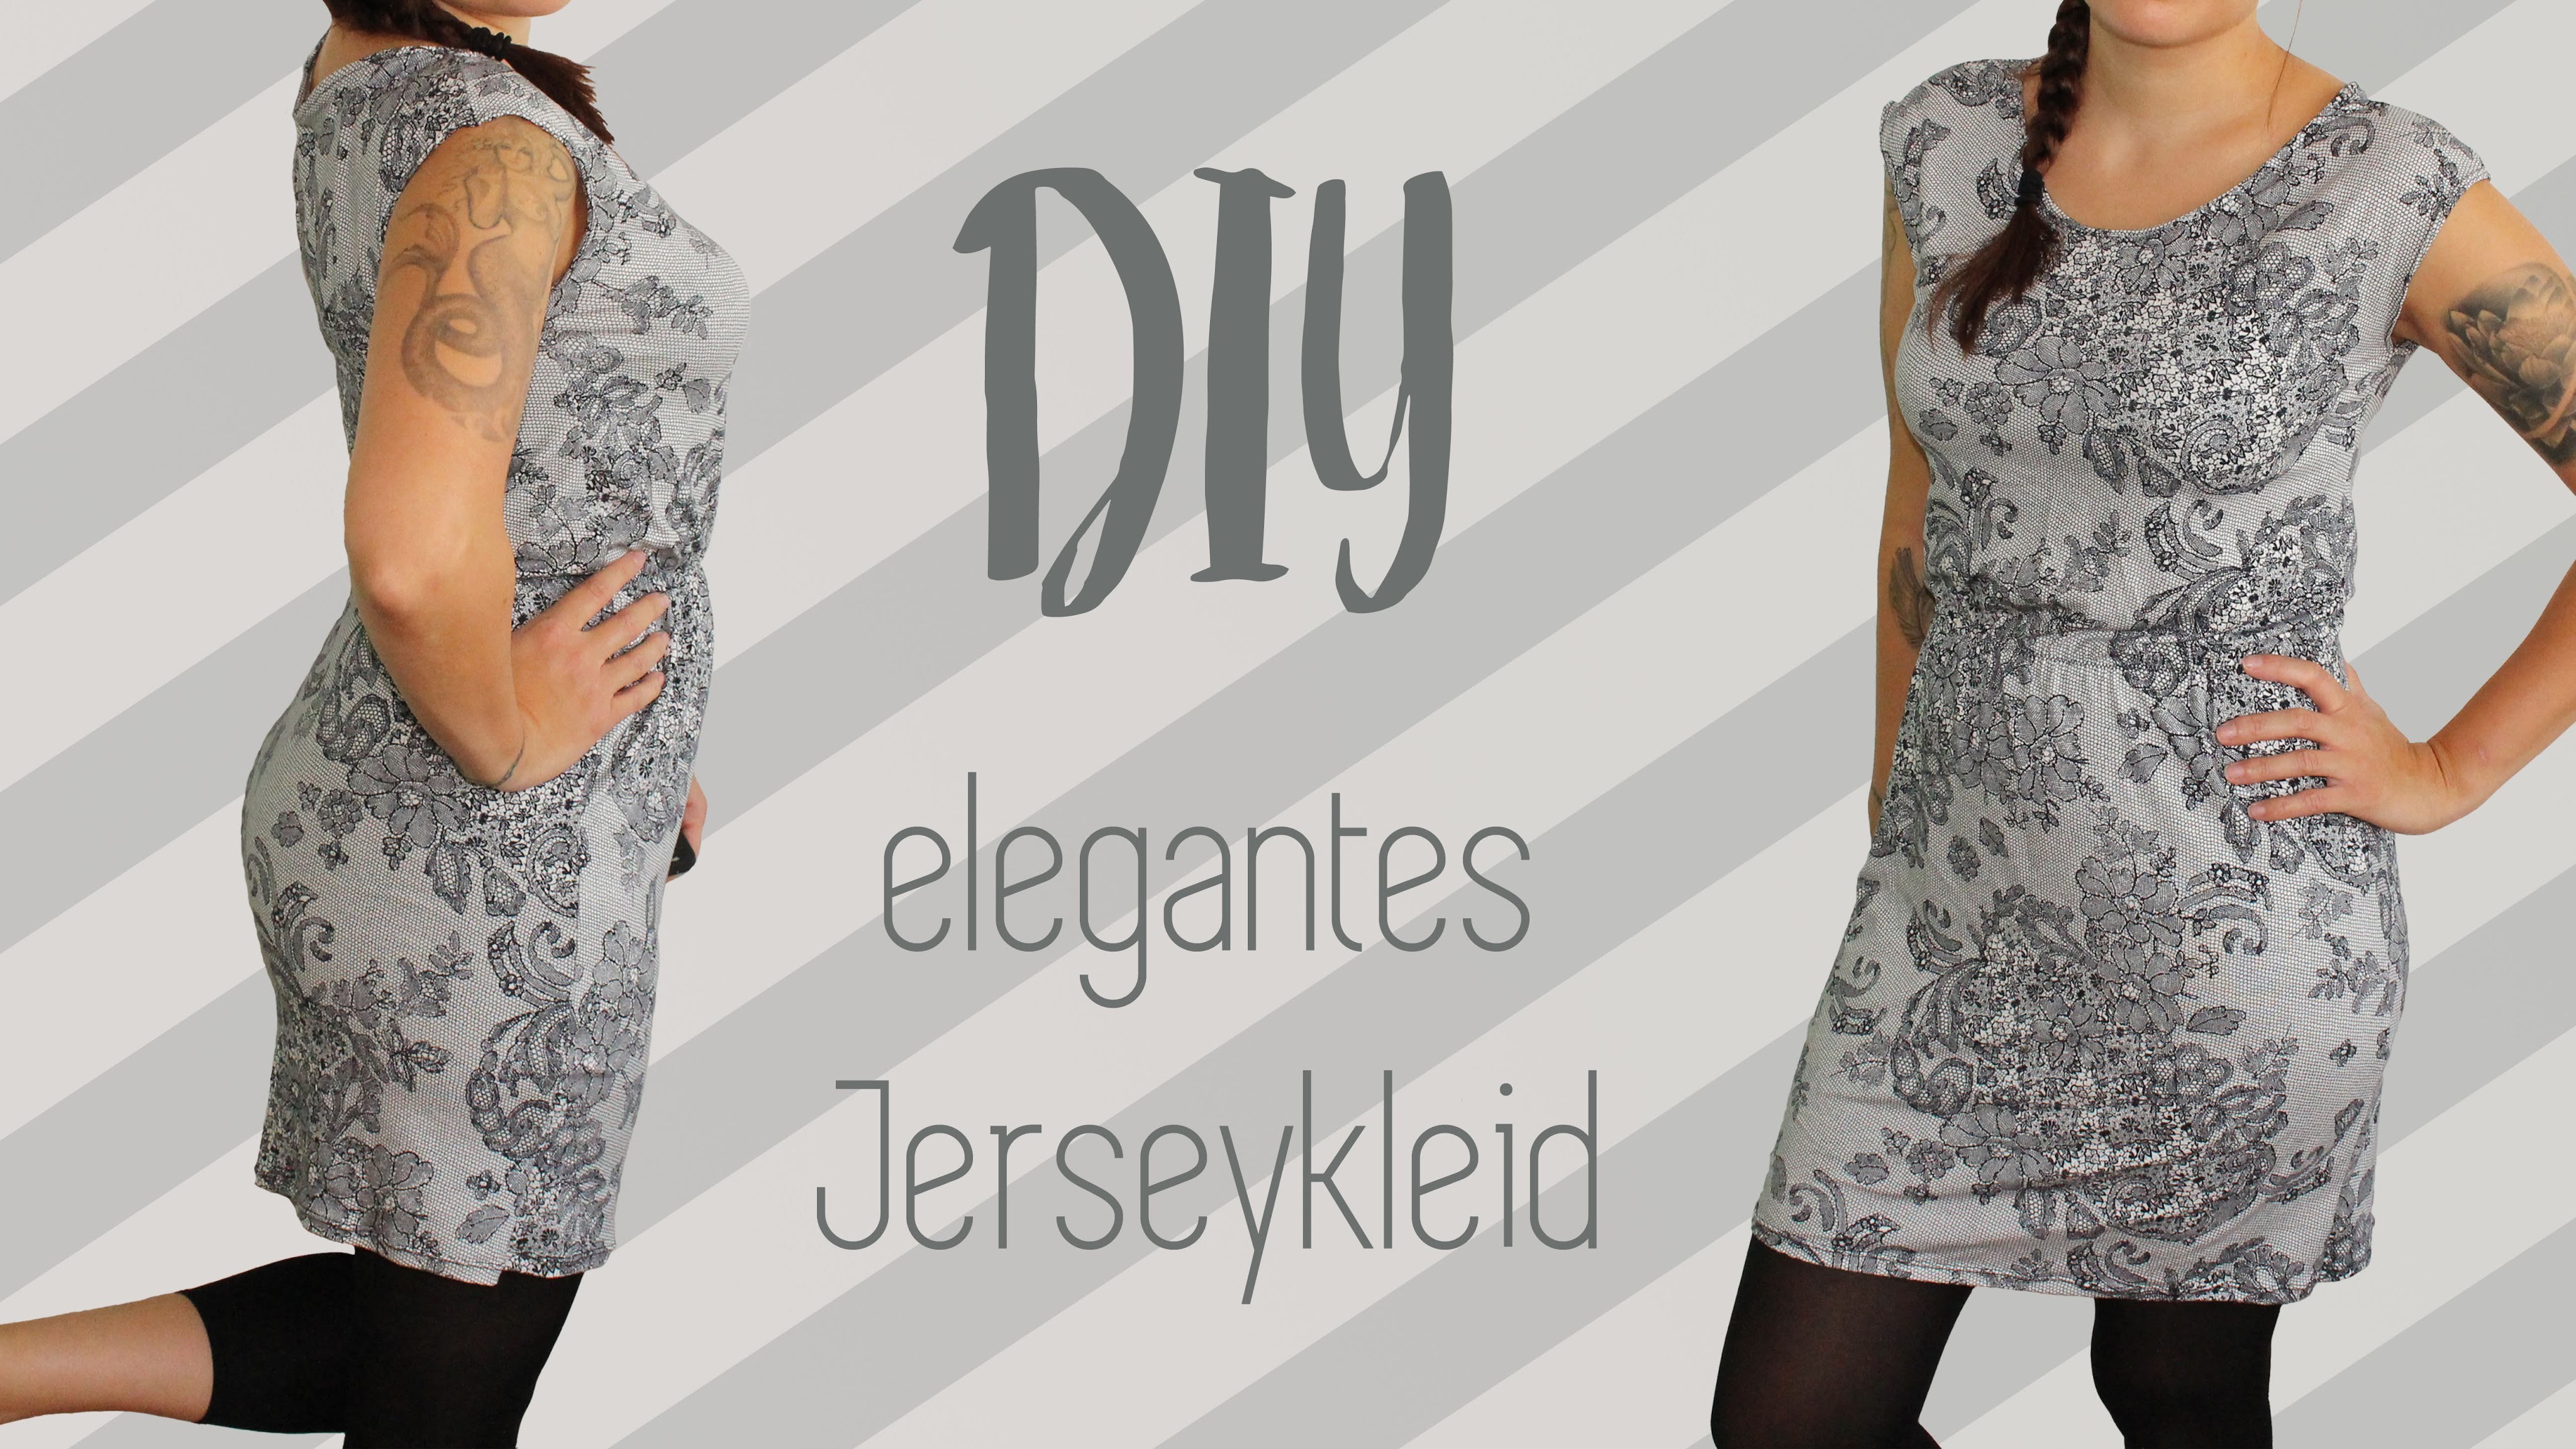 Elegantes und figurschmeichelndes Jerseykleid nähen - DIY Tutorial | Nähanleitung